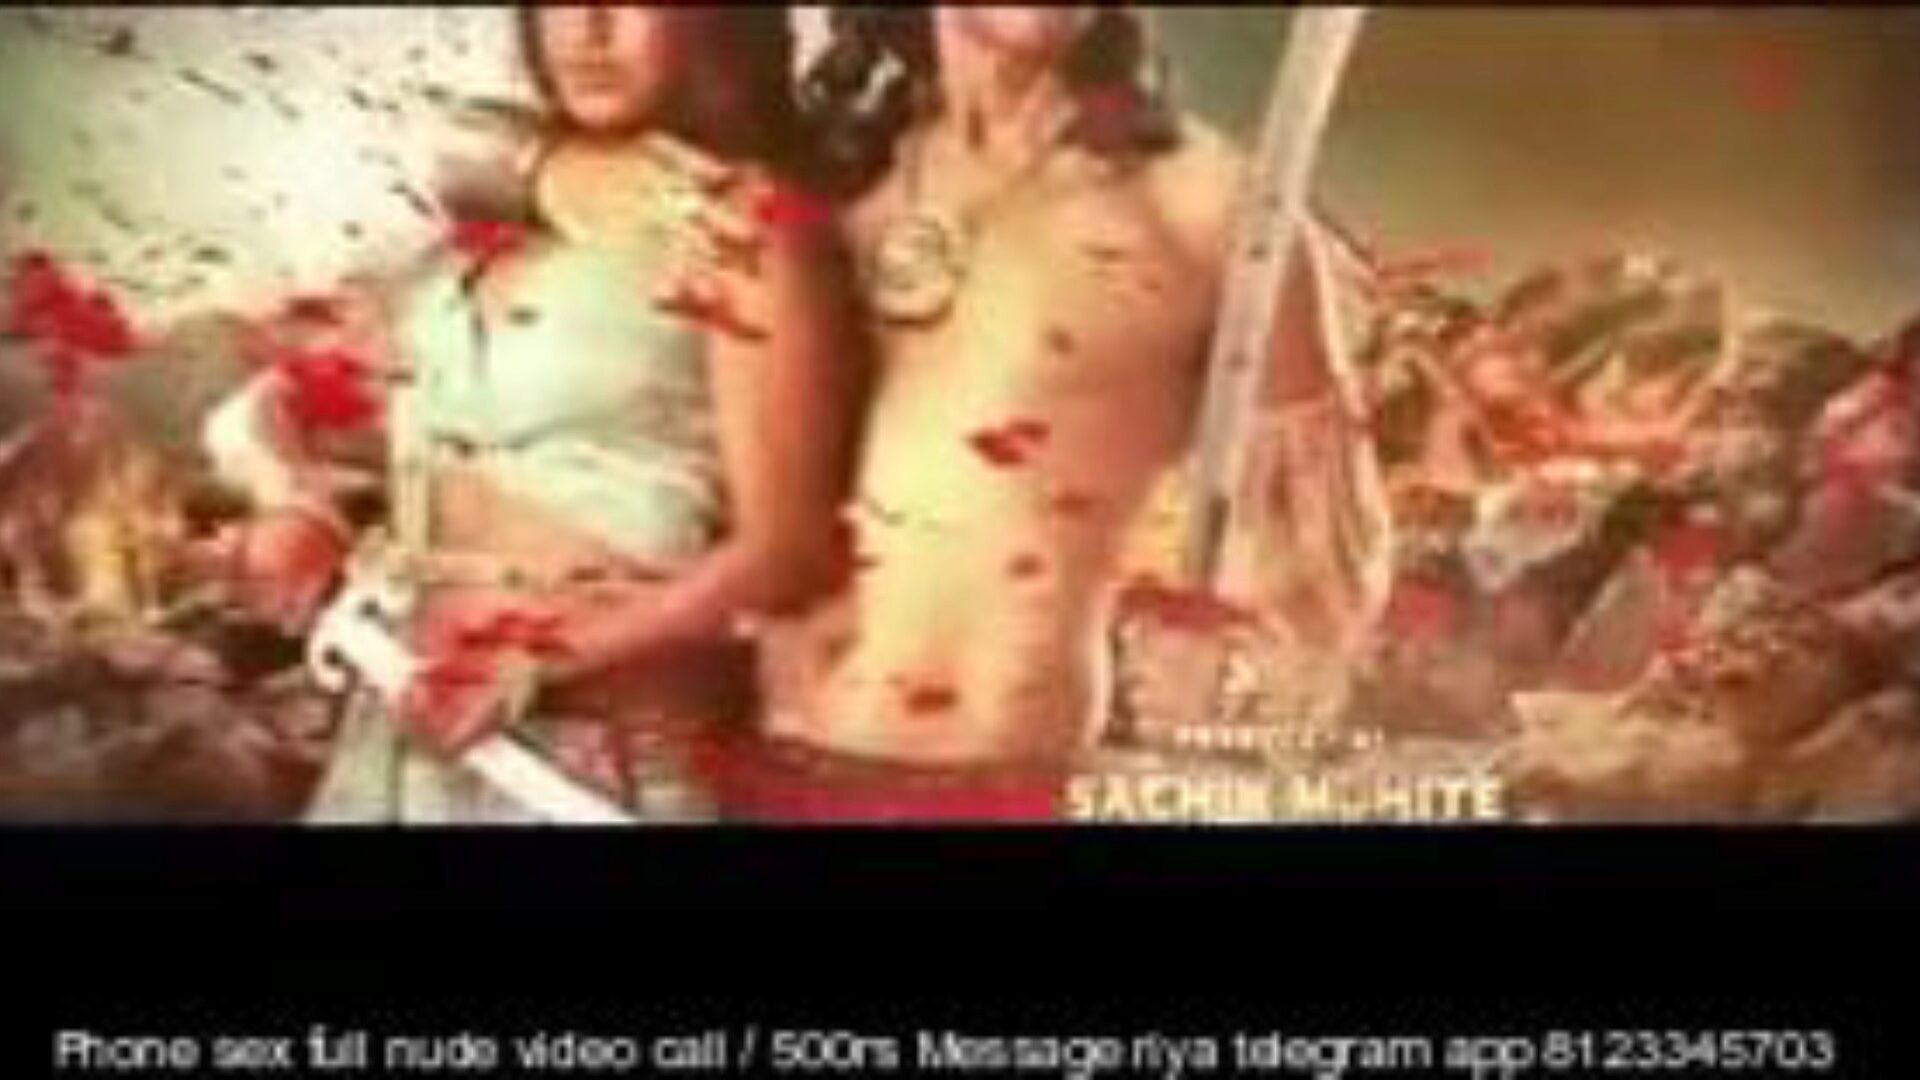 paurashpur 2020 hindi s01 ep 01-07, porno 1a: xhamster ceas paurashpur 2020 hindi s01 ep 01 până la 07 clip pe xhamster, cea mai bună resursă web cu tuburi sexuale cu tone de filme porno indiene gratuite pentru toți și filme porno hindi hindi